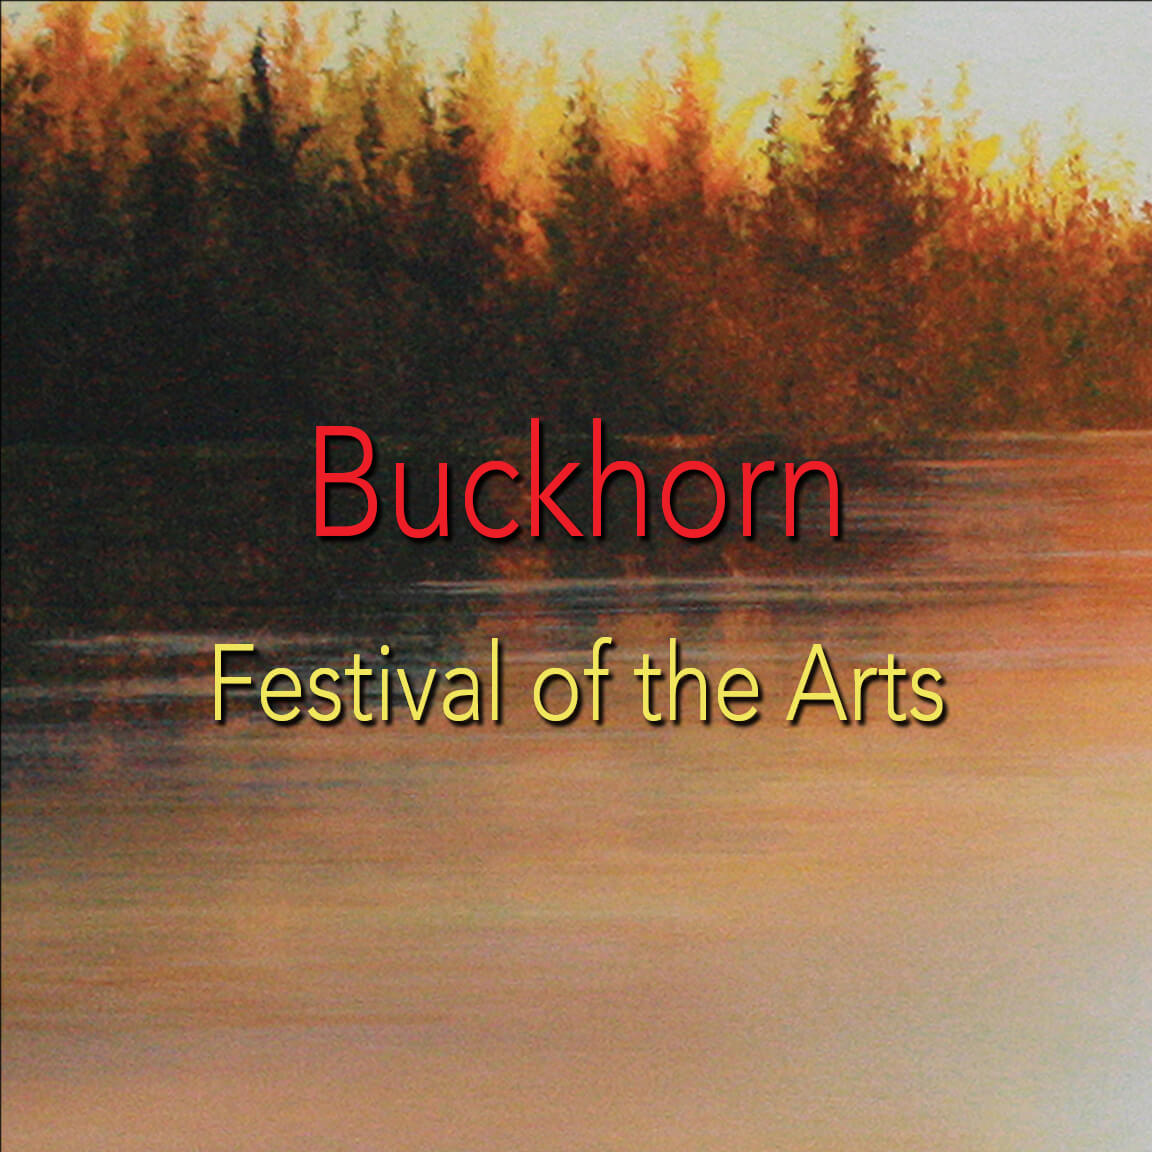 Buckhorn Festival of Arts